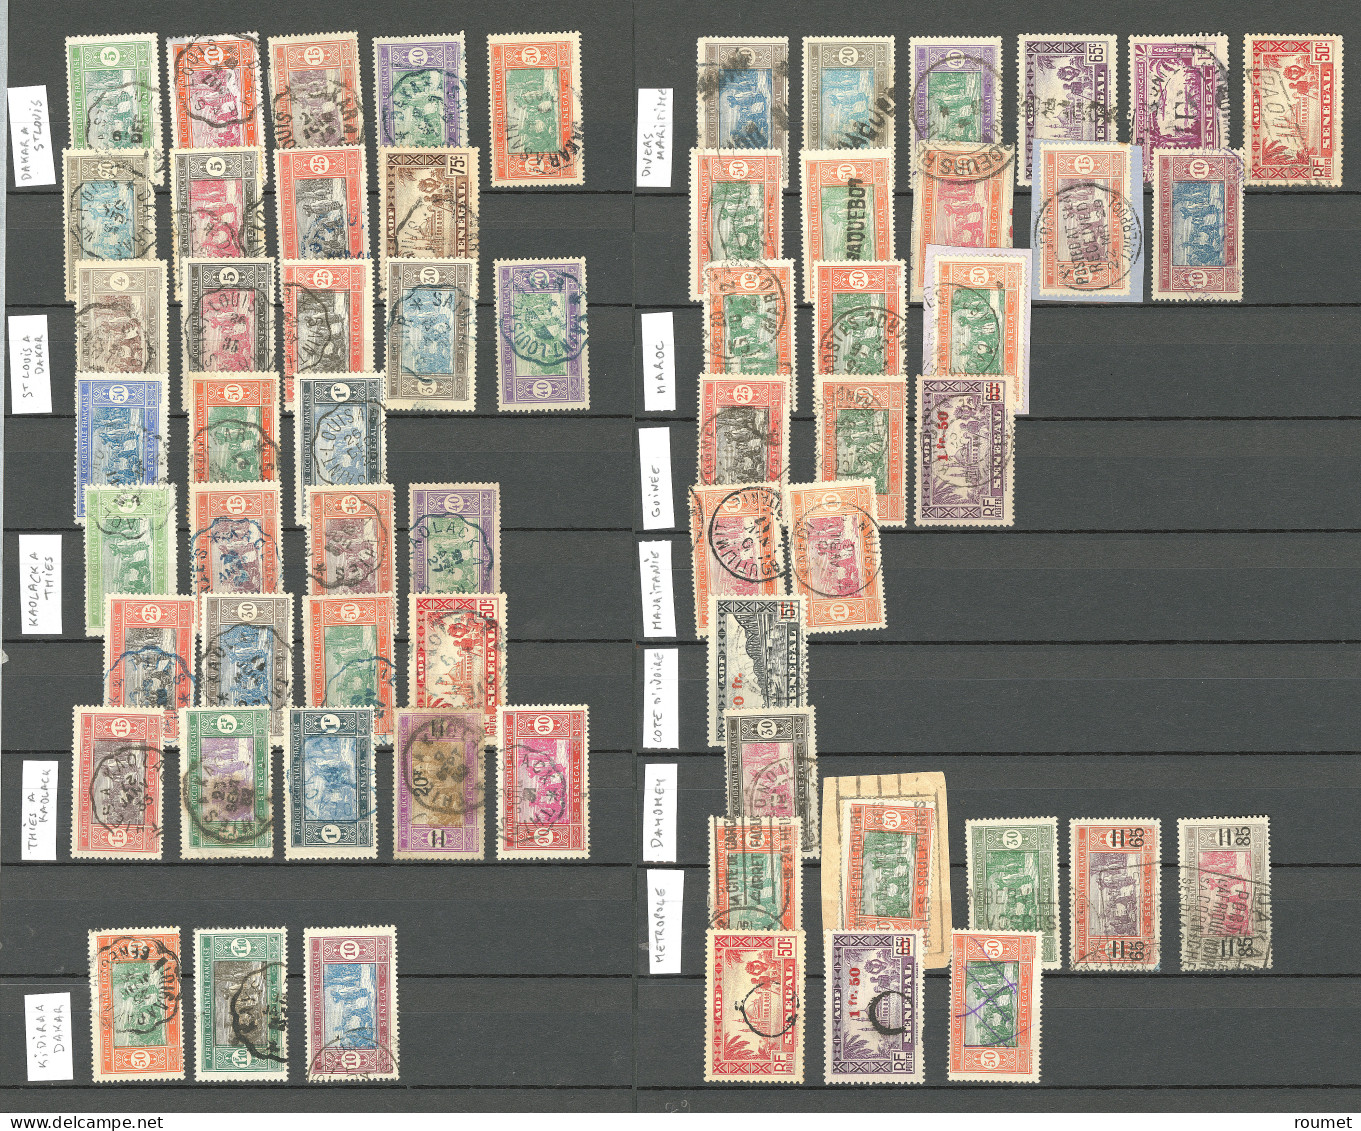 Collection. 1914-1944 (Poste, PA, Taxe), obl choisies de petits bureaux entre Bakel et Zinguinchan. - TB